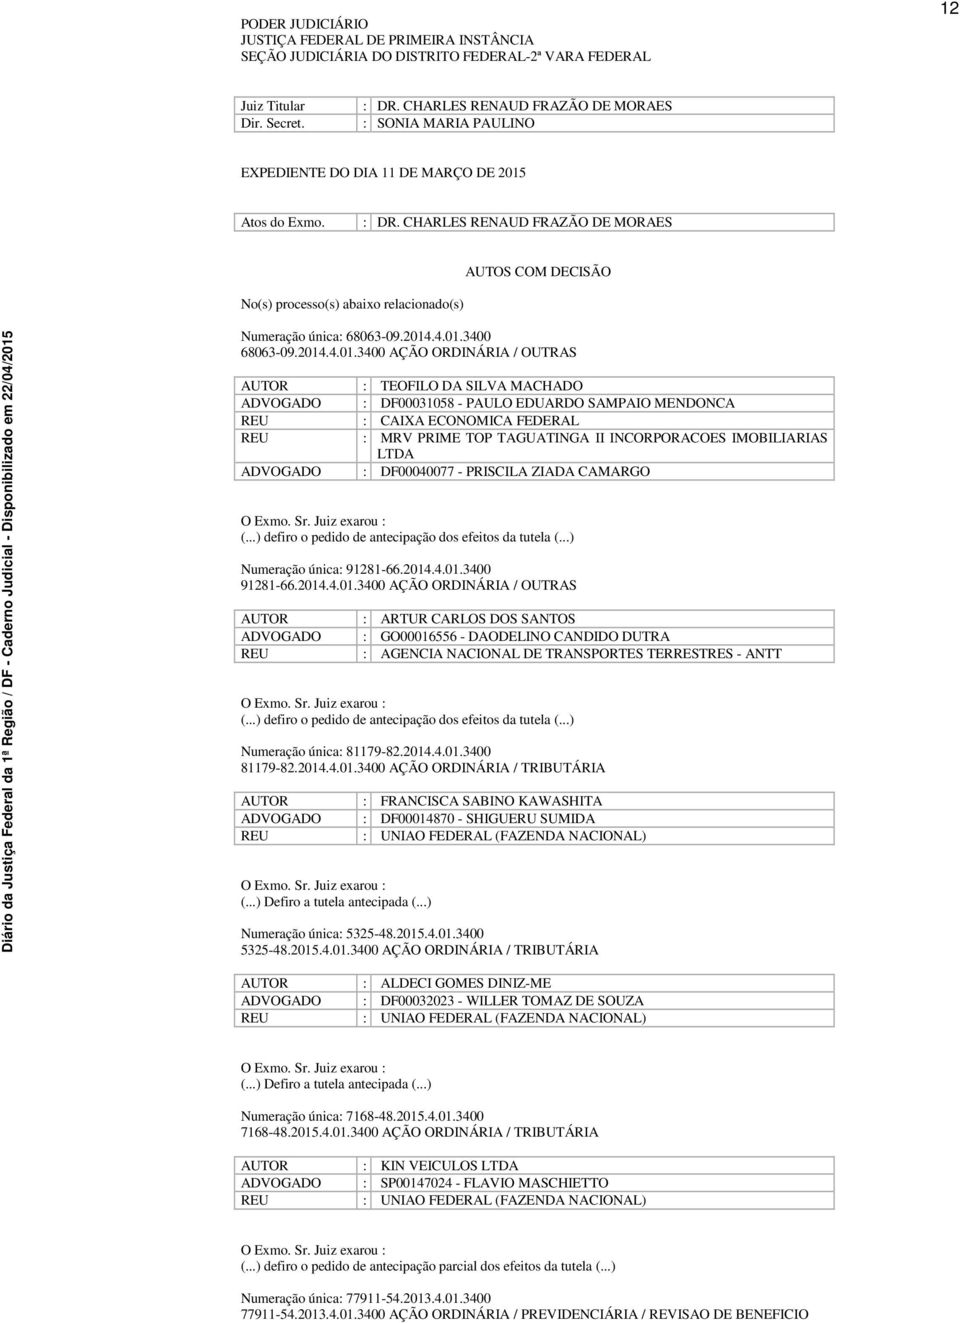 CHARLES RENAUD FRAZÃO DE MORAES AUTOS COM DECISÃO No(s) processo(s) abaixo relacionado(s) Numeração única: 68063-09.2014